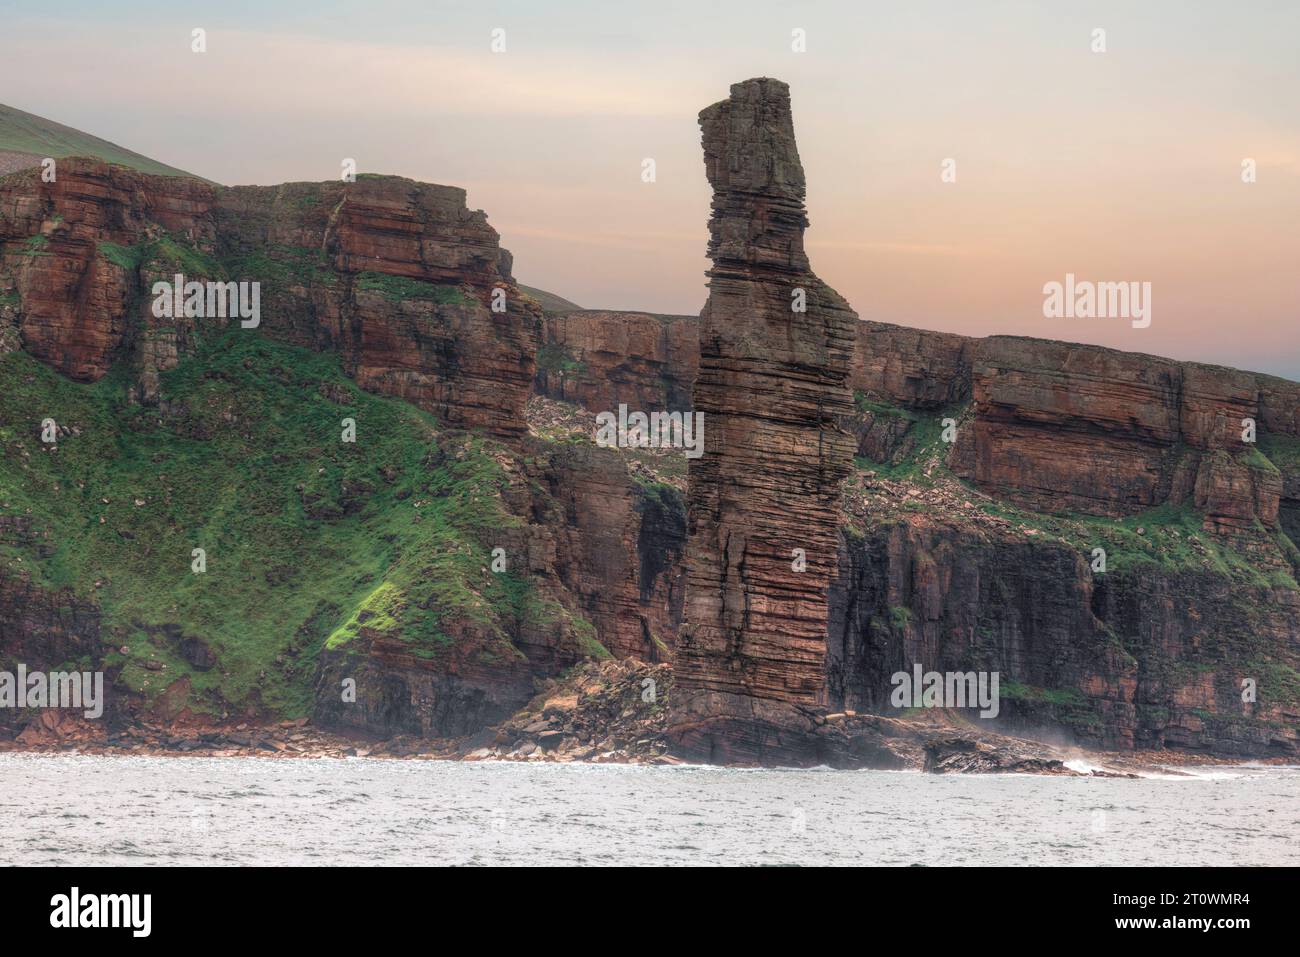 Der Old man of Hoy ist ein 449 Meter hoher Seestapel an der Westküste der Insel Hoy in Orkney, Schottland. Stockfoto